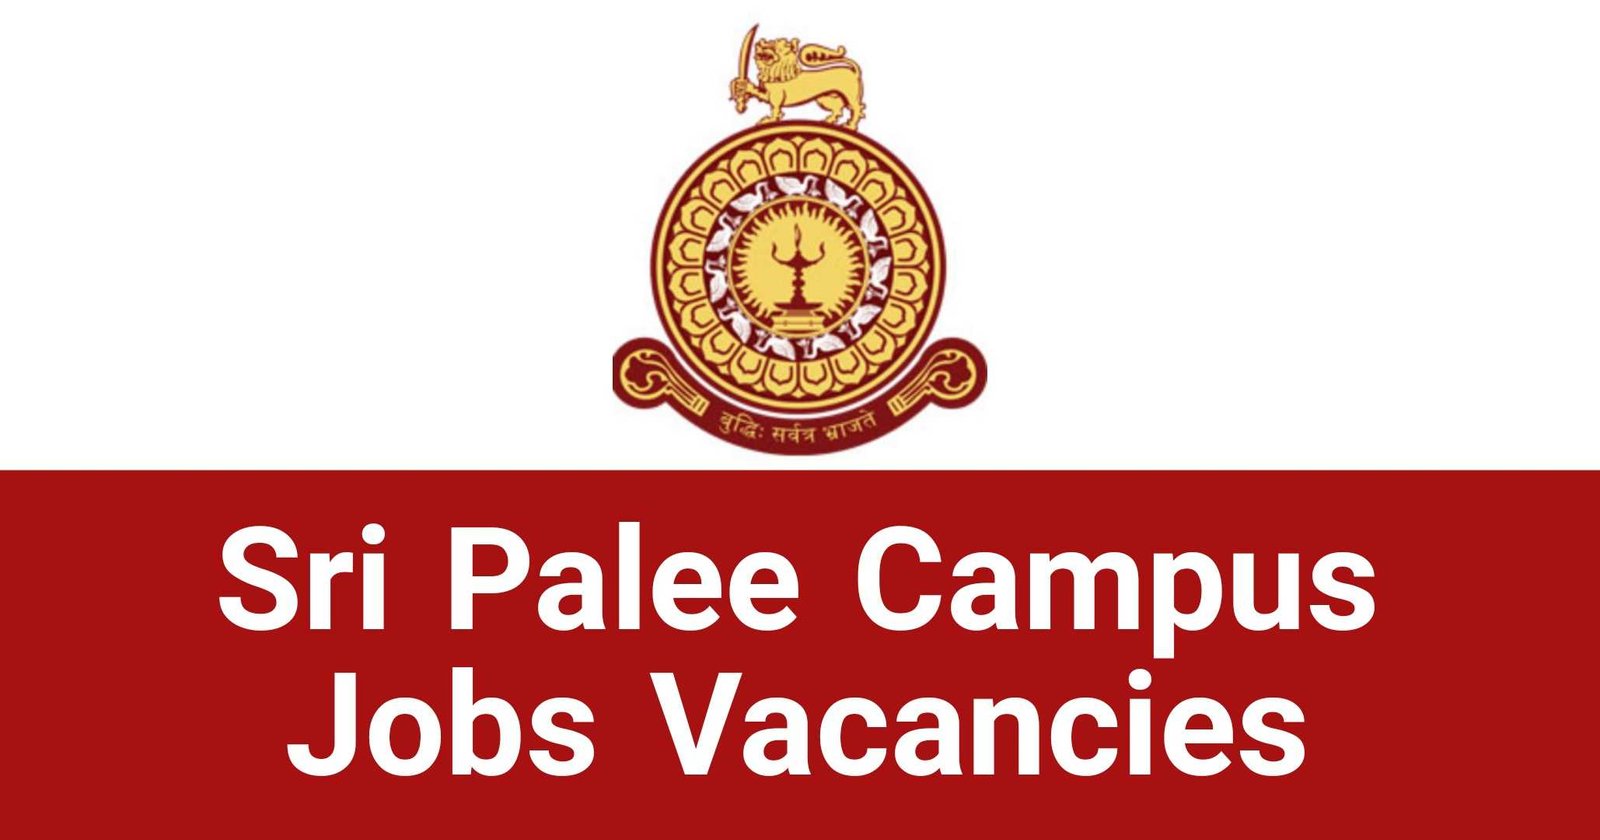 Sri Palee Campus Jobs Vacancies Careers